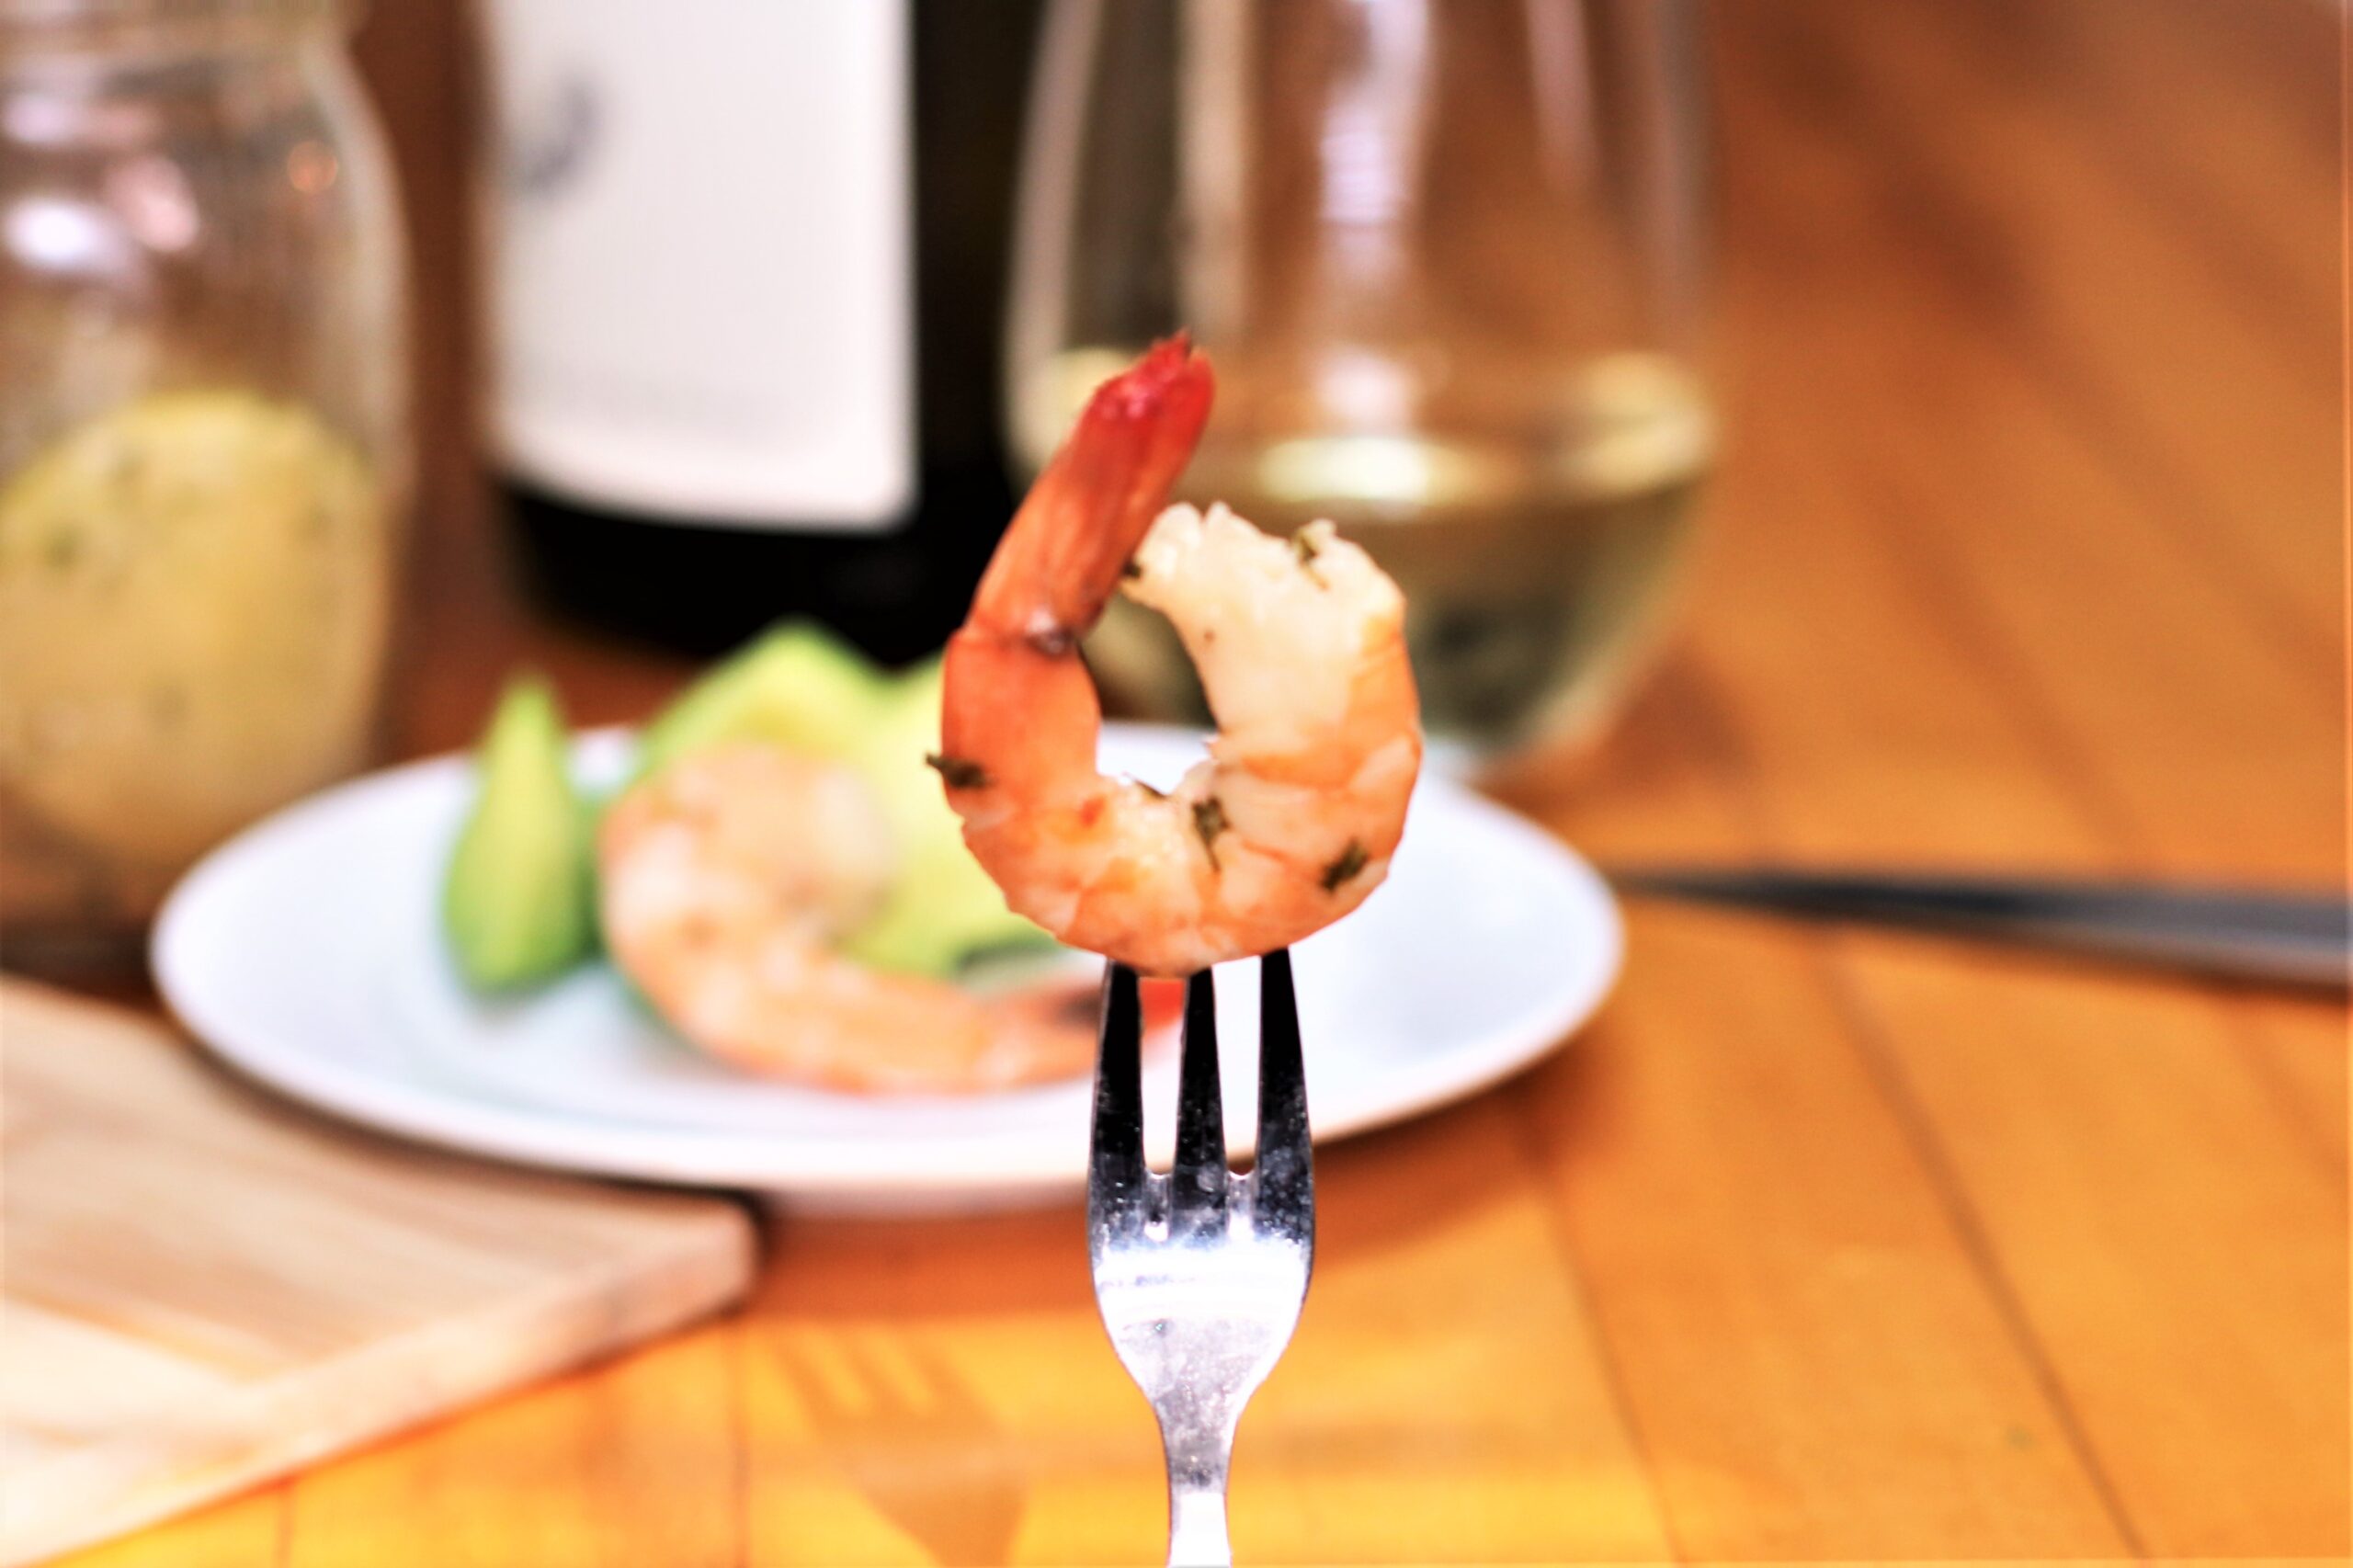 pickled shrimp on fork